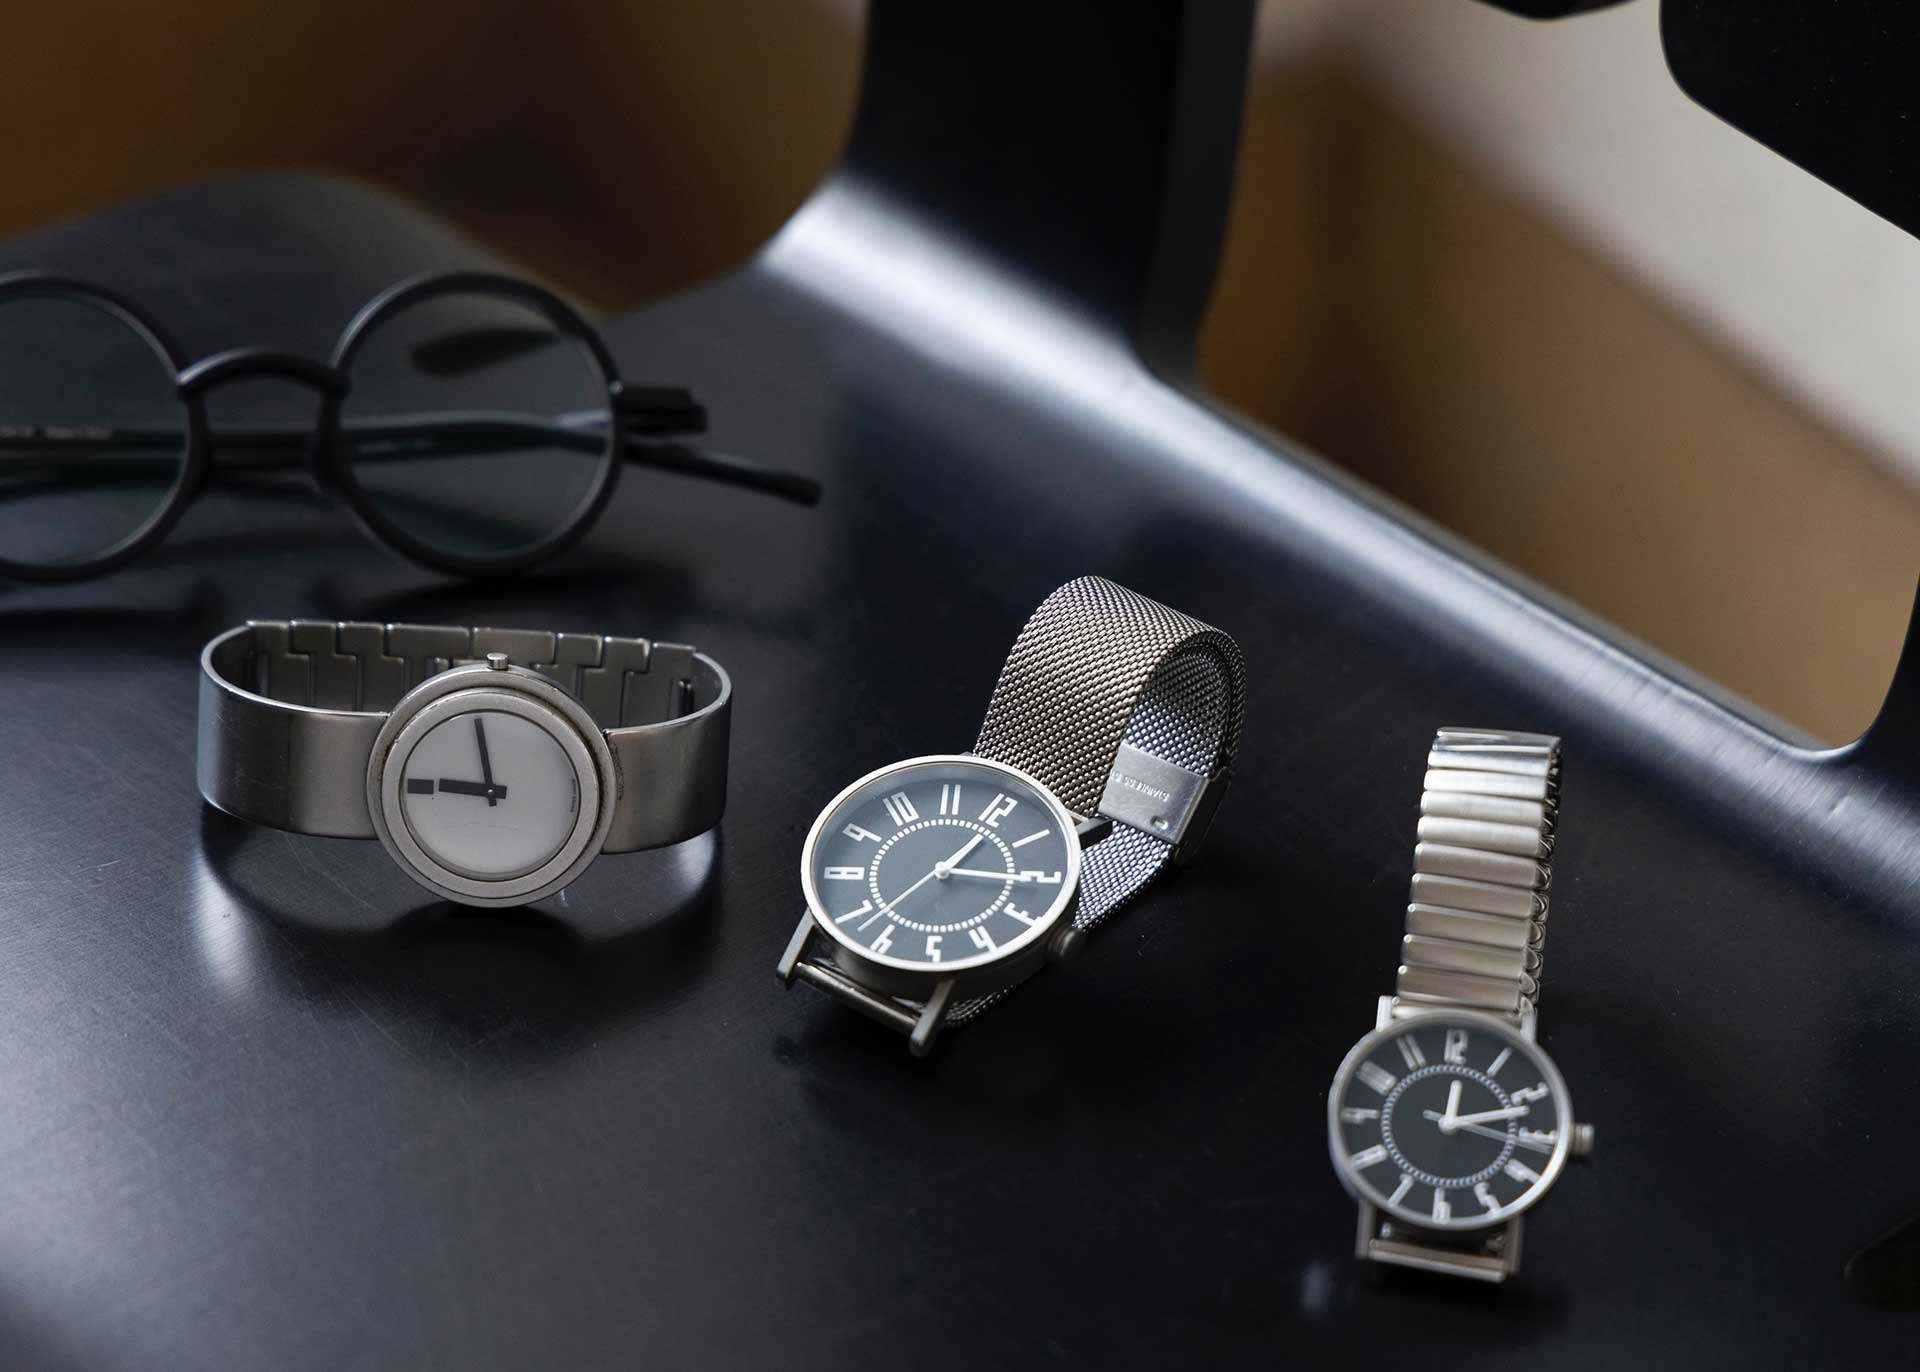 左から内田繁デザインのWRIST WATCH、五十嵐威暢デザインのeki watch。森さんが普段から掛けているコンスタンティン・グルチッチデザインのメガネとも好相性。